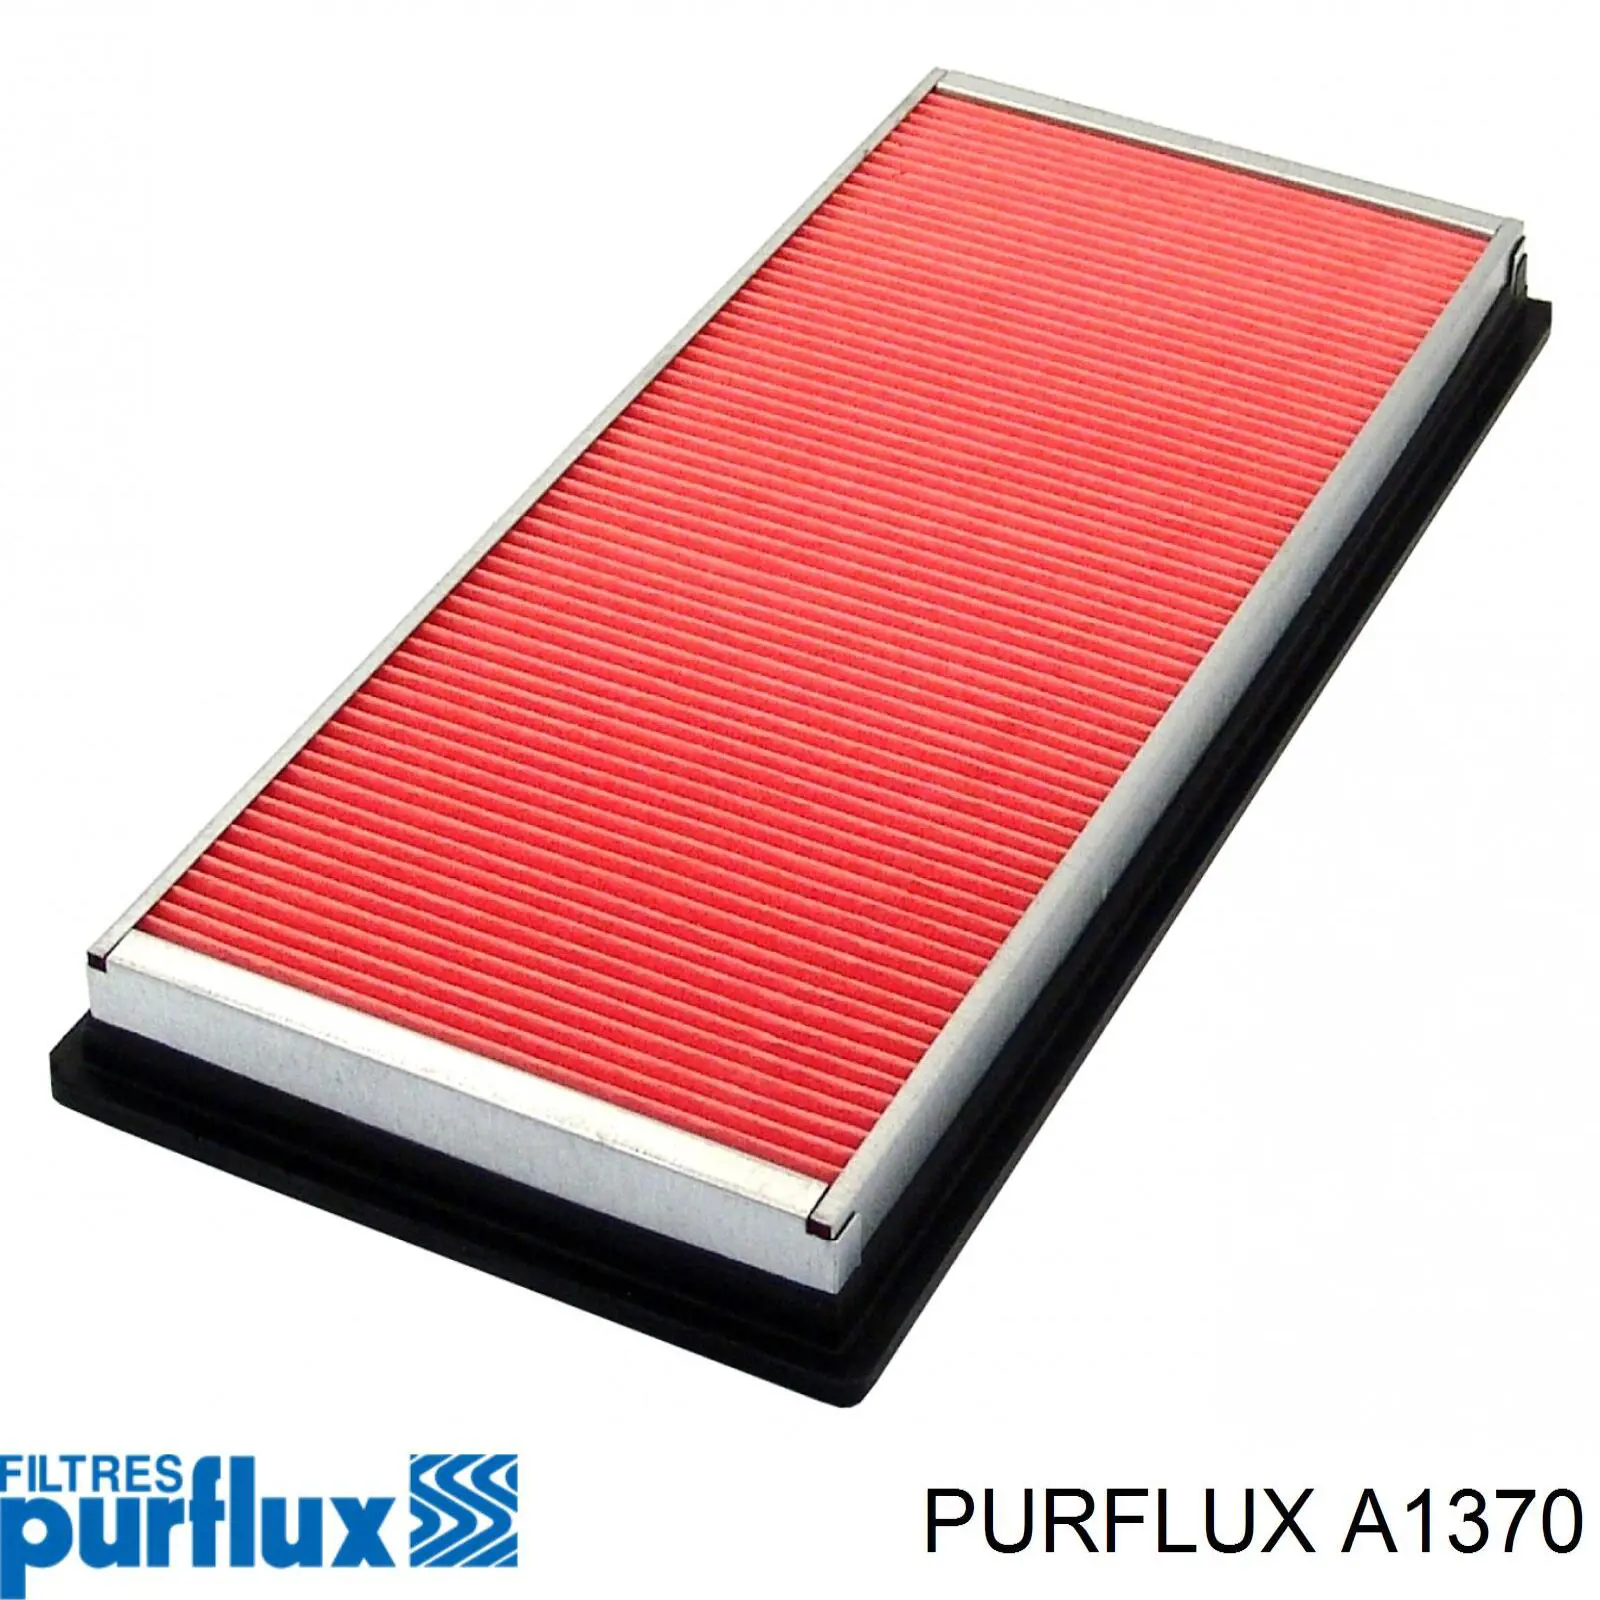 A1370 Purflux filtro de aire